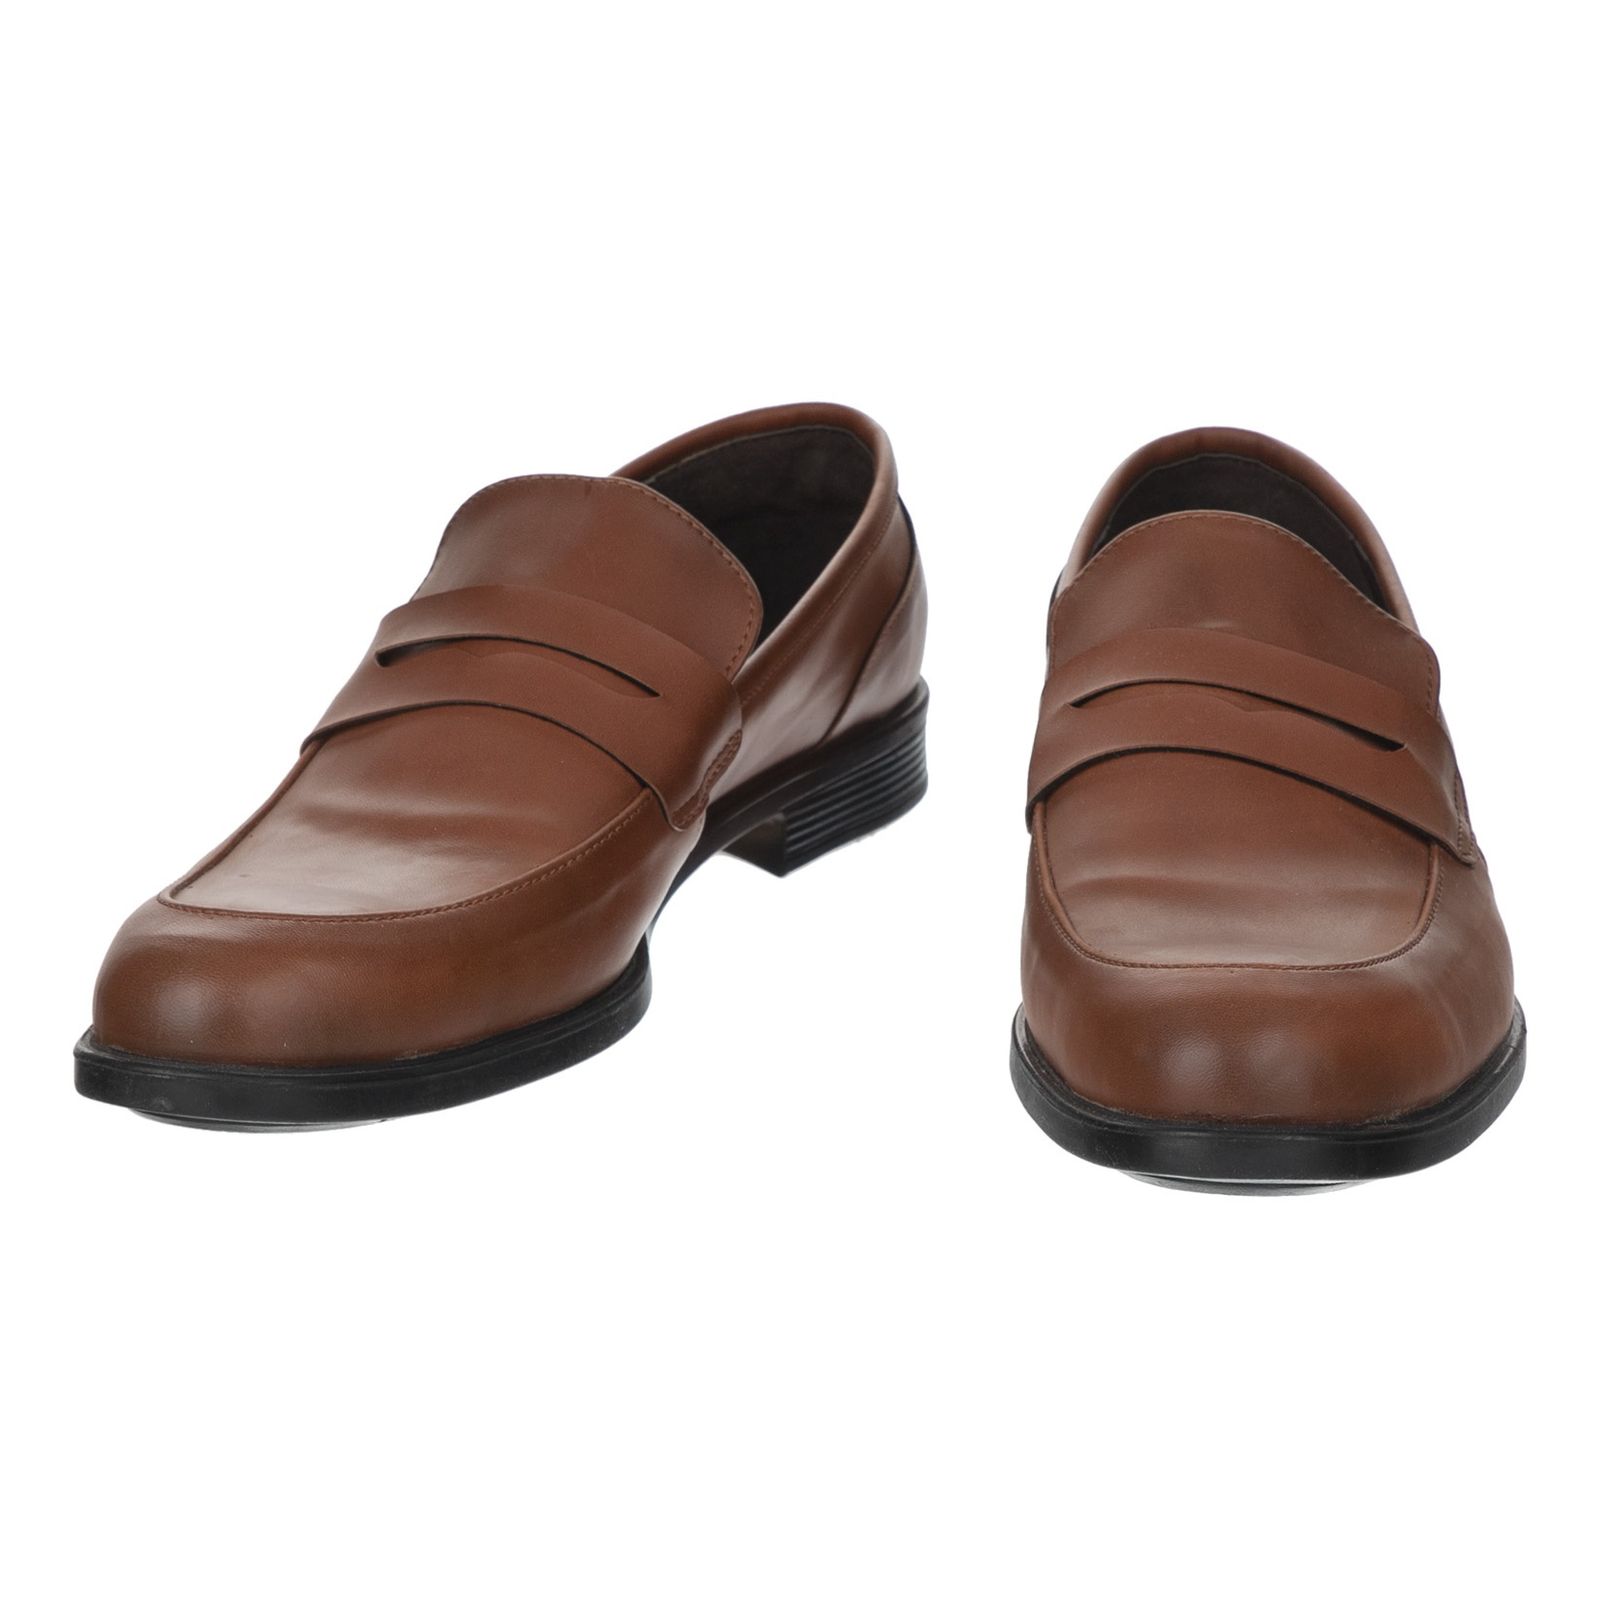 کفش مردانه پولاریس مدل 100243628-122 - قهوه ای - 6